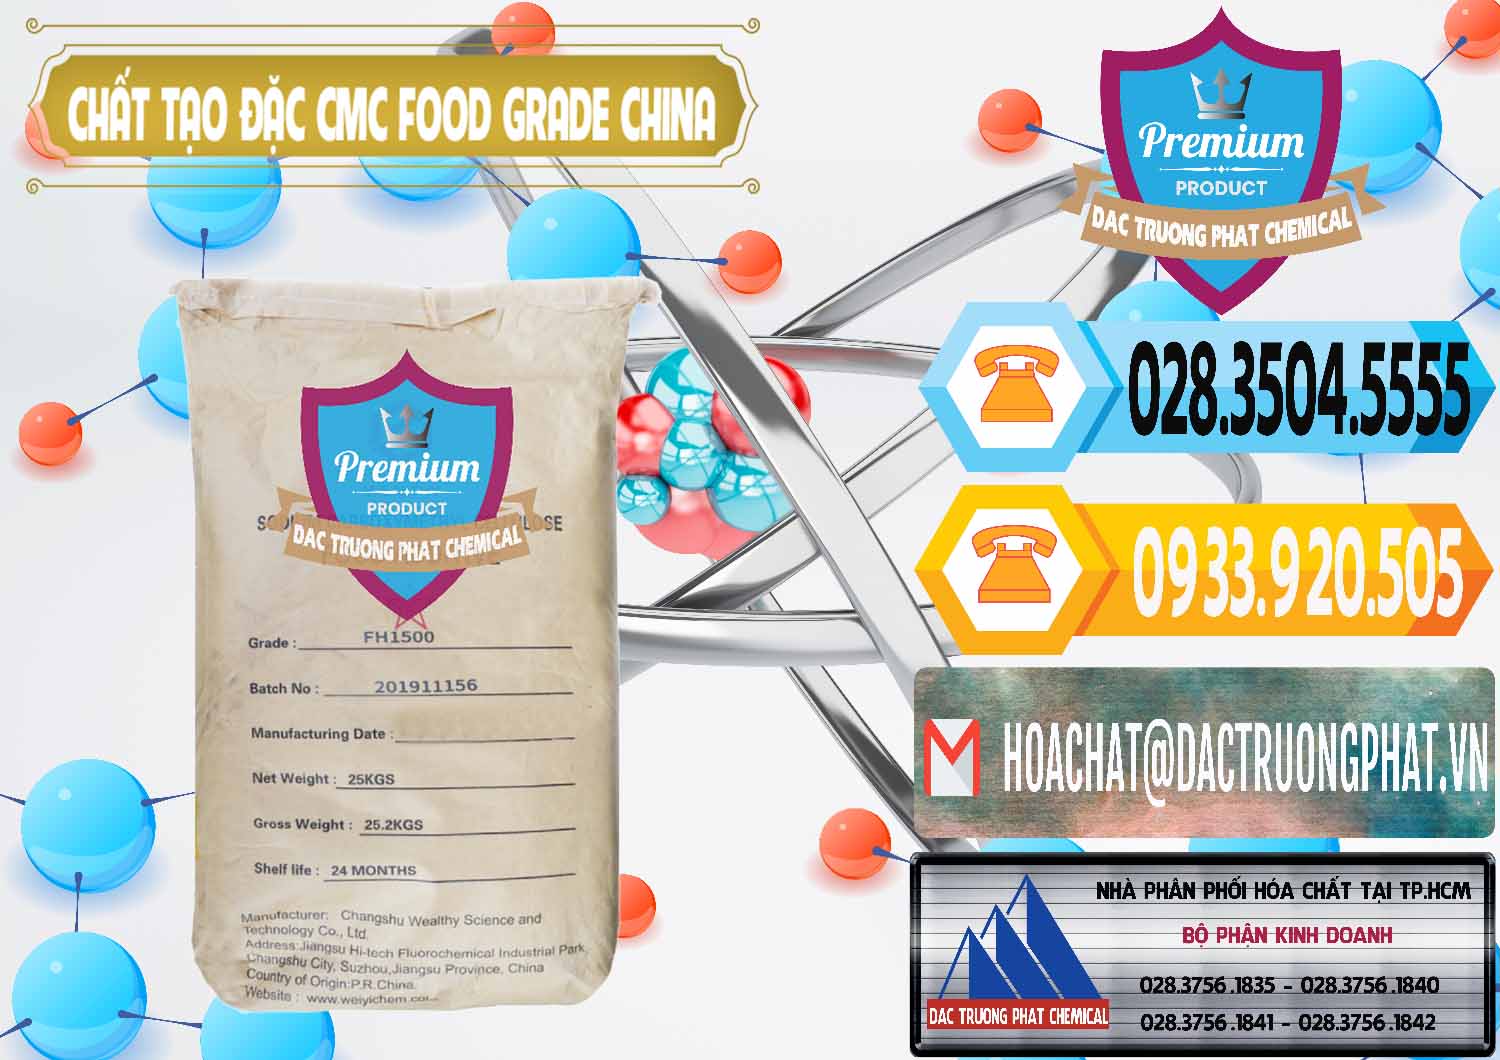 Nơi cung ứng & bán Chất Tạo Đặc CMC Wealthy Food Grade Trung Quốc China - 0426 - Nơi chuyên bán & cung cấp hóa chất tại TP.HCM - hoachattayrua.net